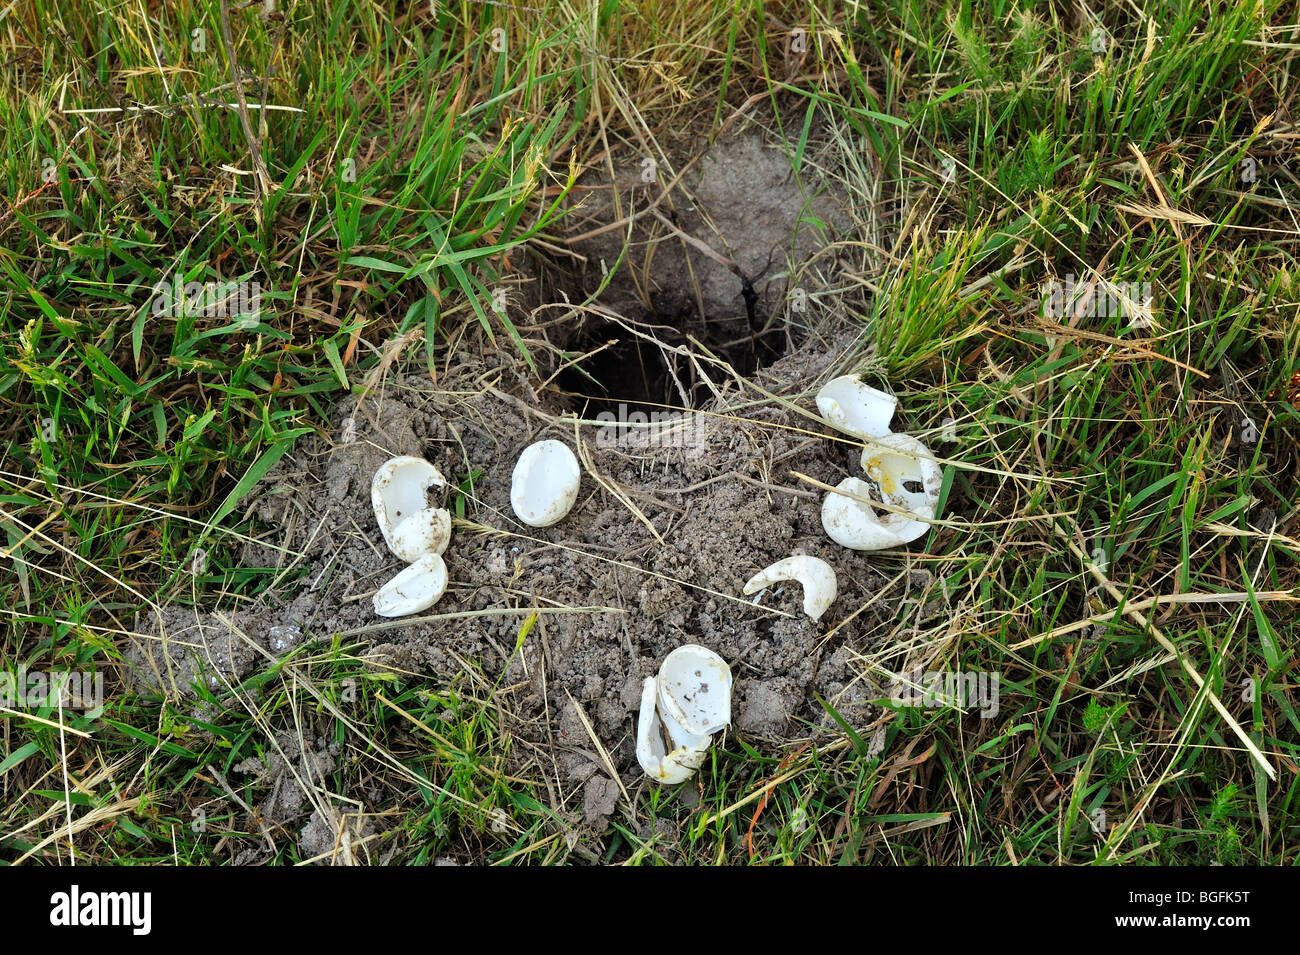 Coquilles cassées de l'étang des œufs de tortues (Emys orbicularis) creusés par huppe fasciée (Upupa epops), La Brenne, France Banque D'Images